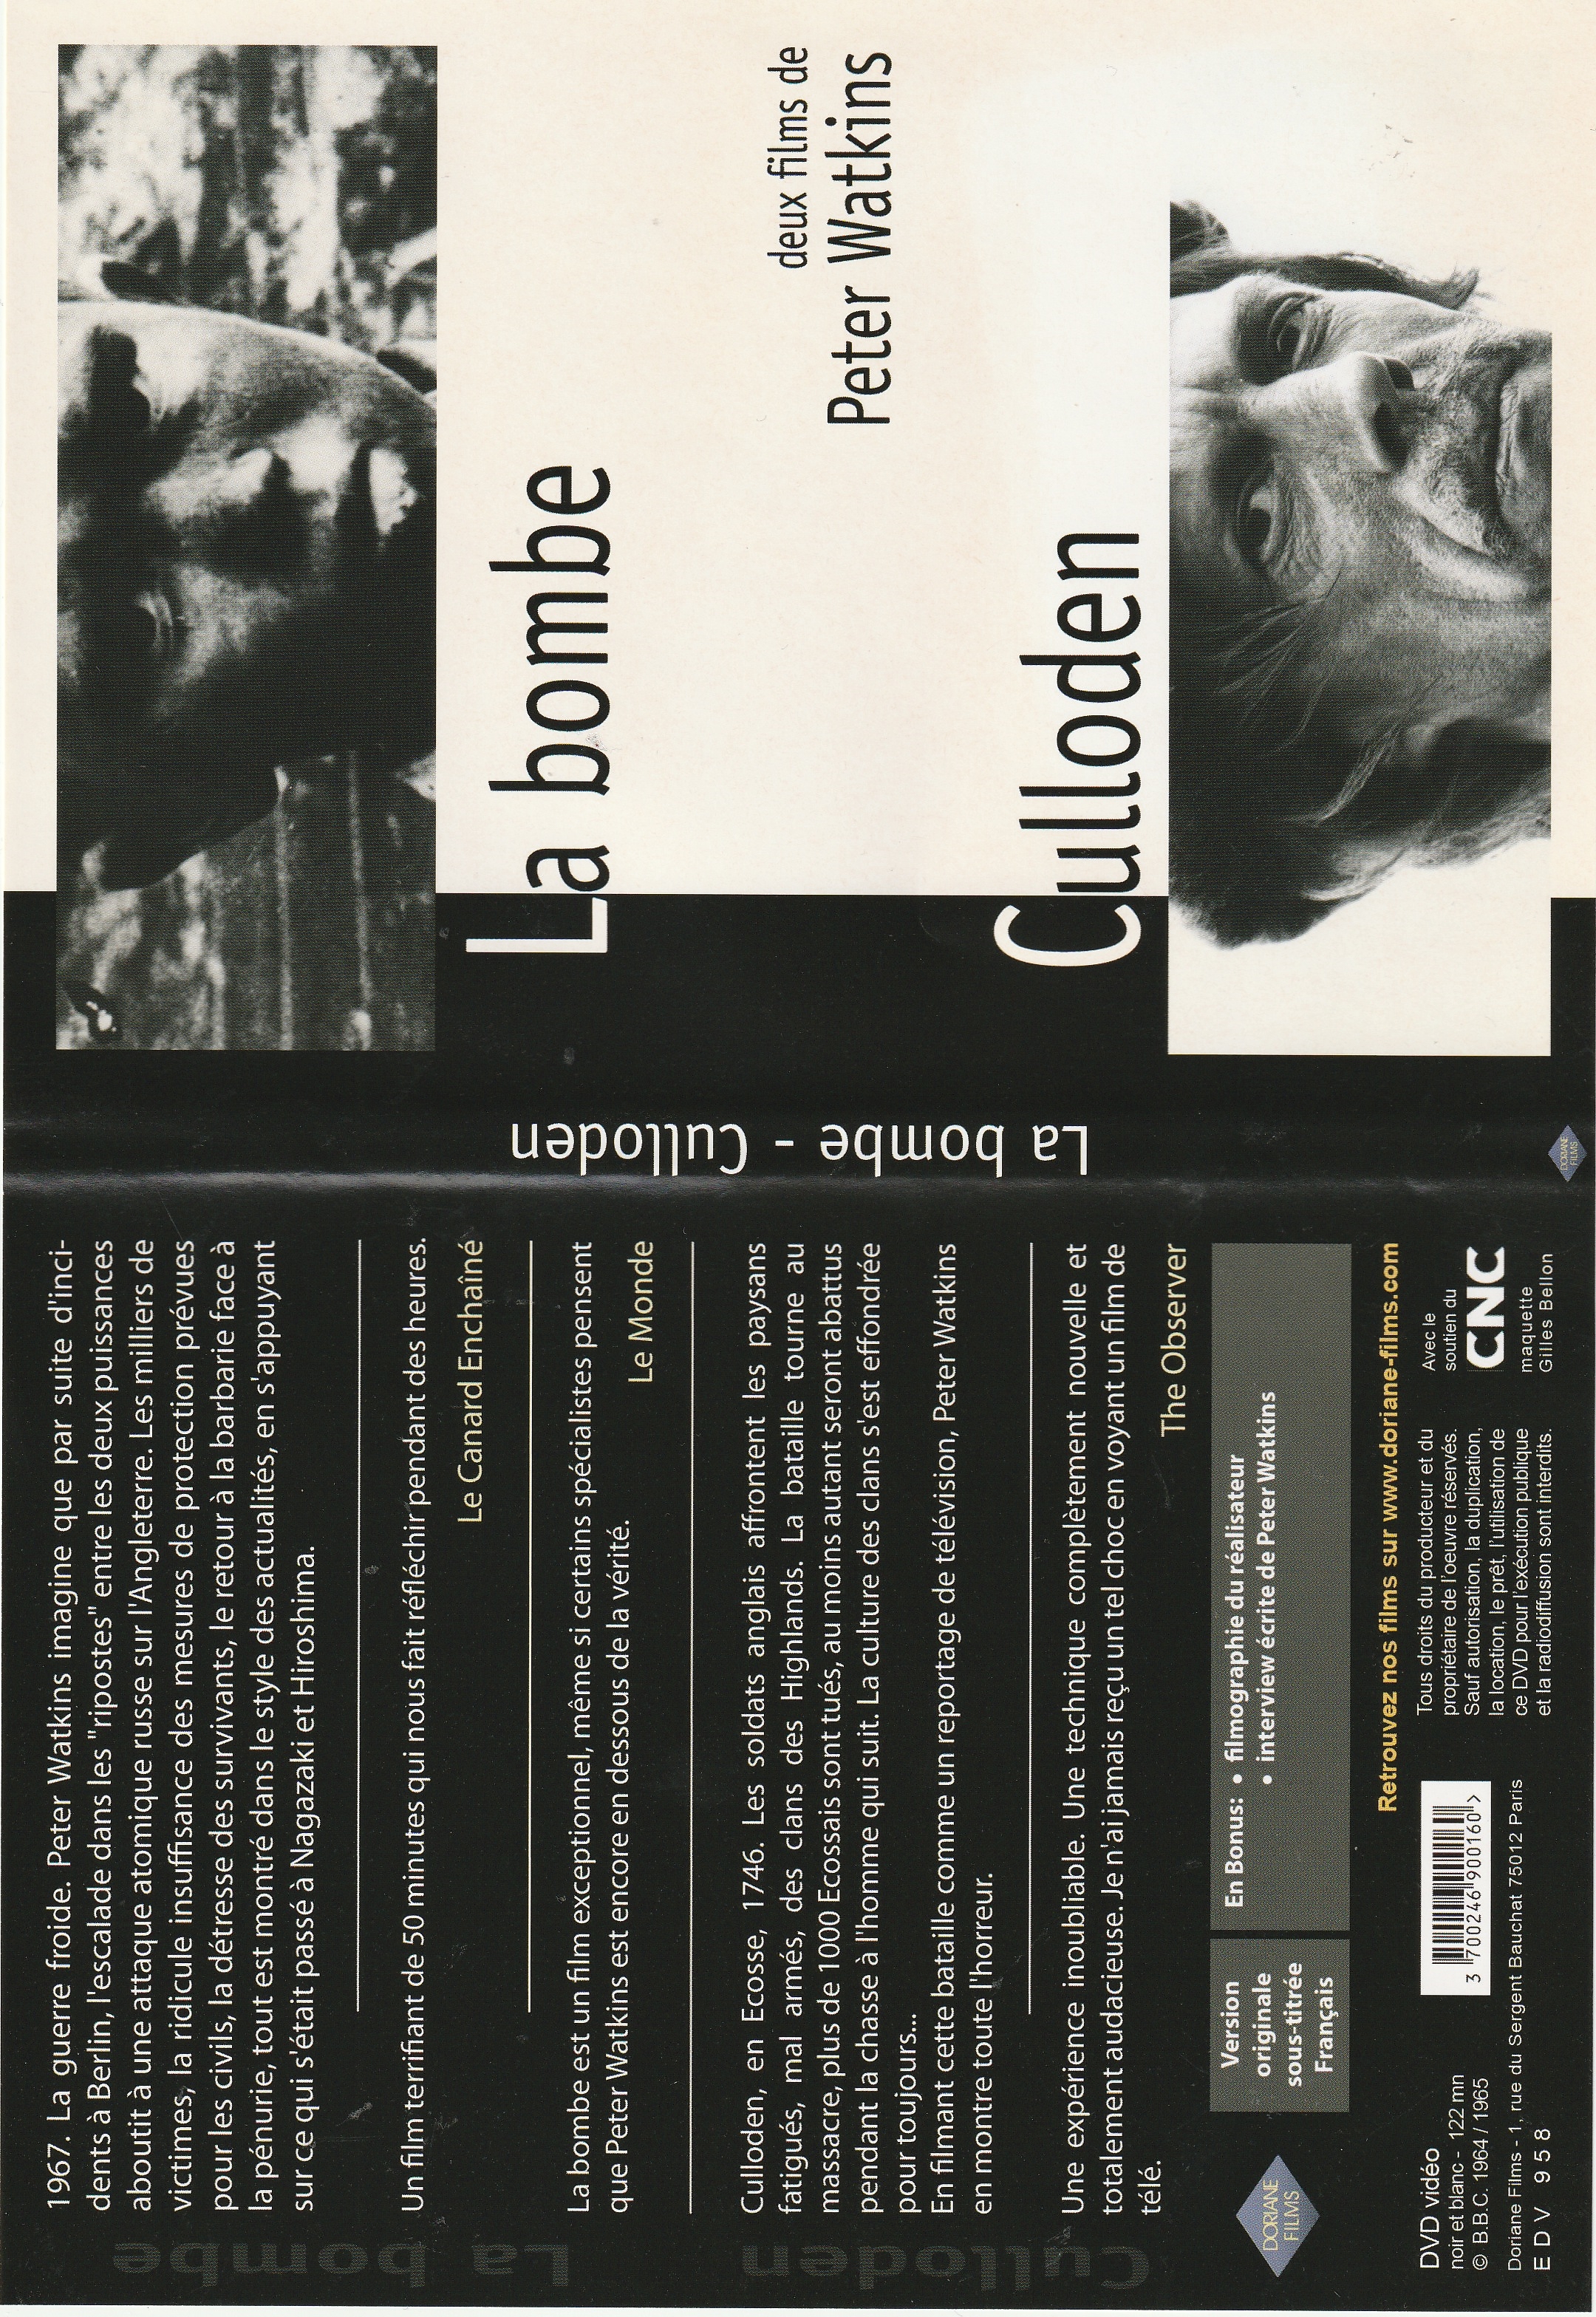 Jaquette DVD La Bombe - Culloden